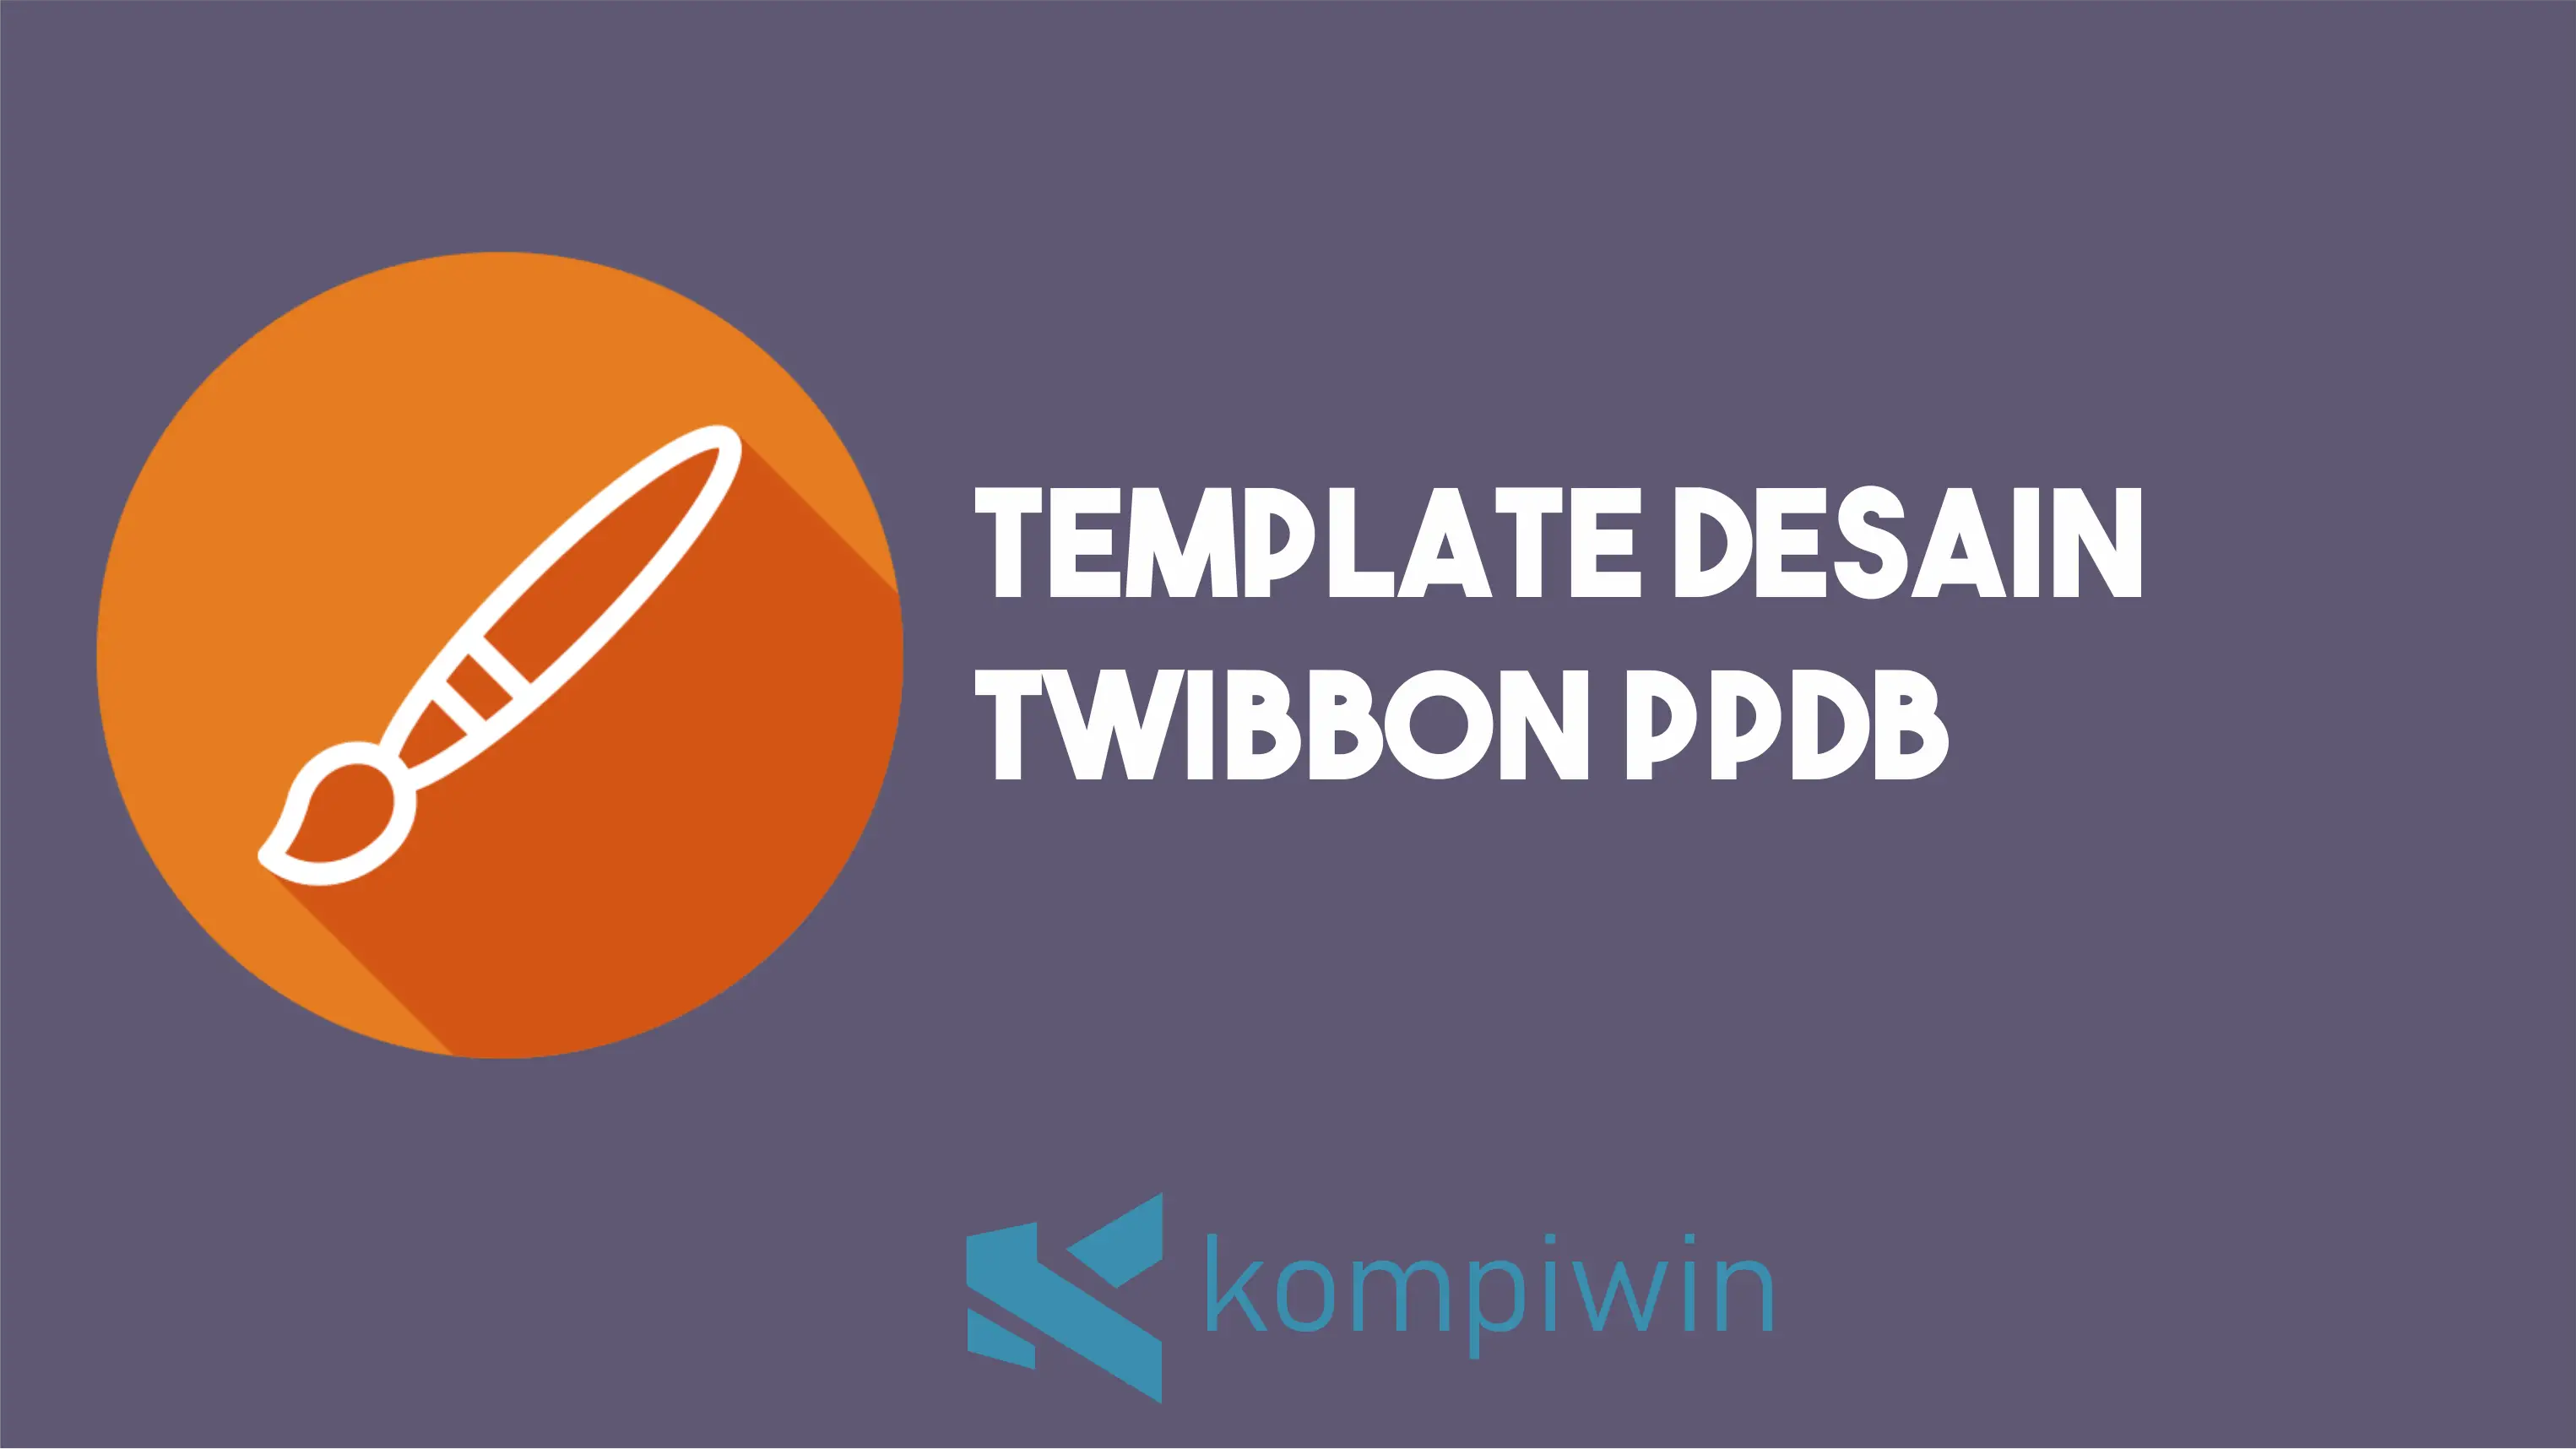 Tempalte Desain Twibbon PPDB